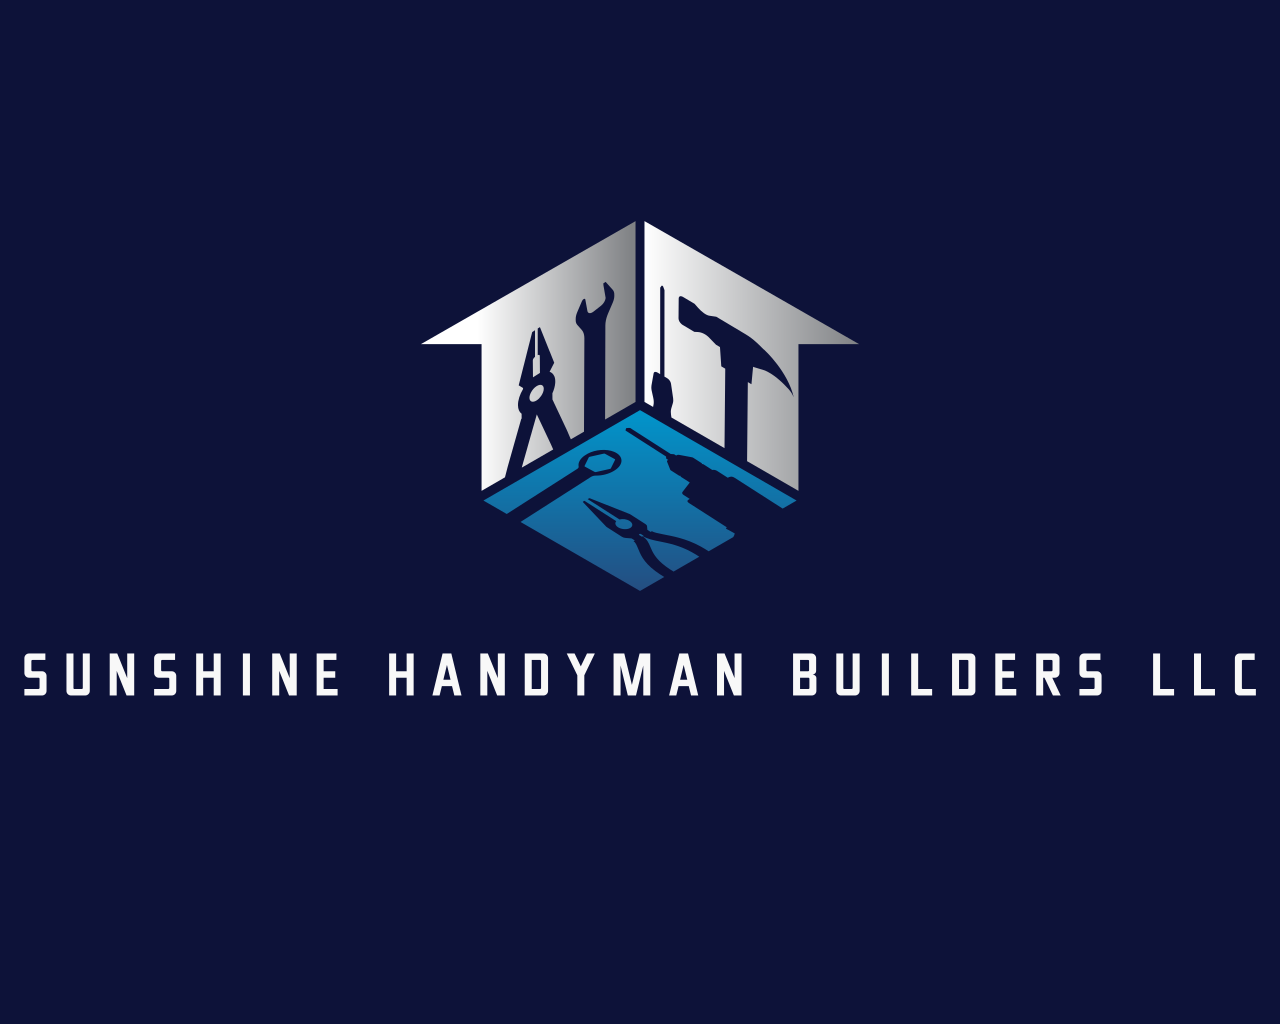 Sunshine Handyman LLC's logo